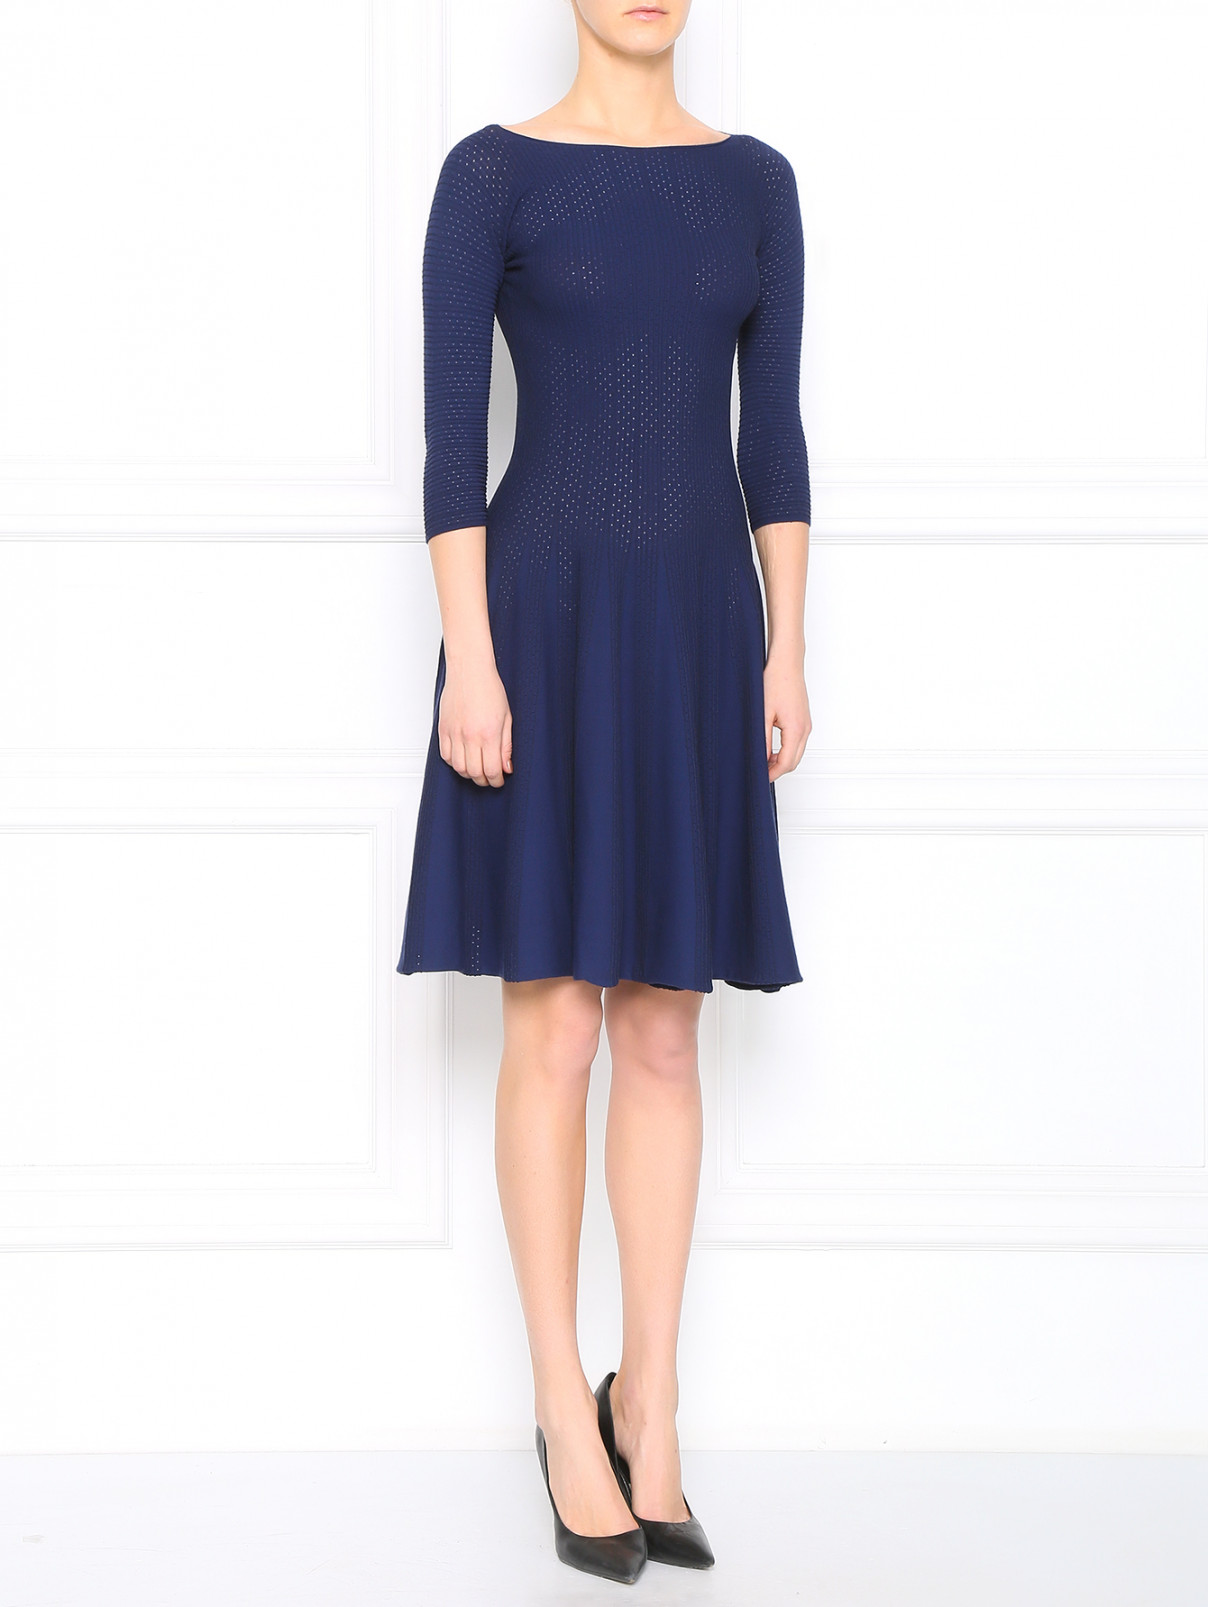 Платье из трикотажа с рукавами 3/4 Emporio Armani  –  Модель Общий вид  – Цвет:  Синий